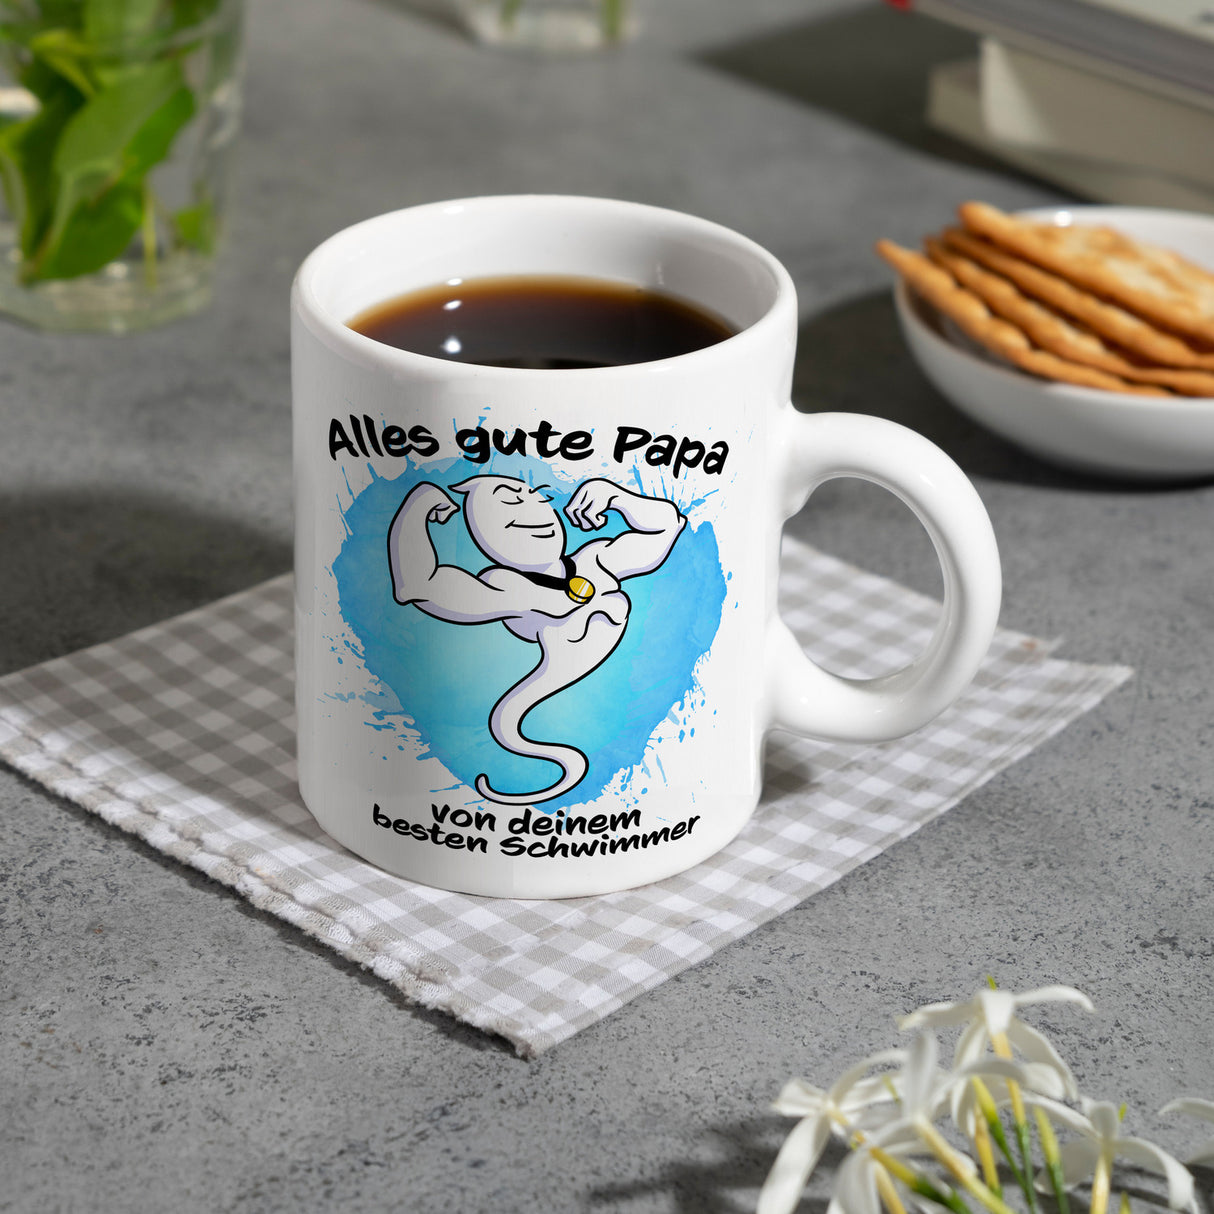 Papas bester Schwimmer Kaffeebecher mit Samen Illustration